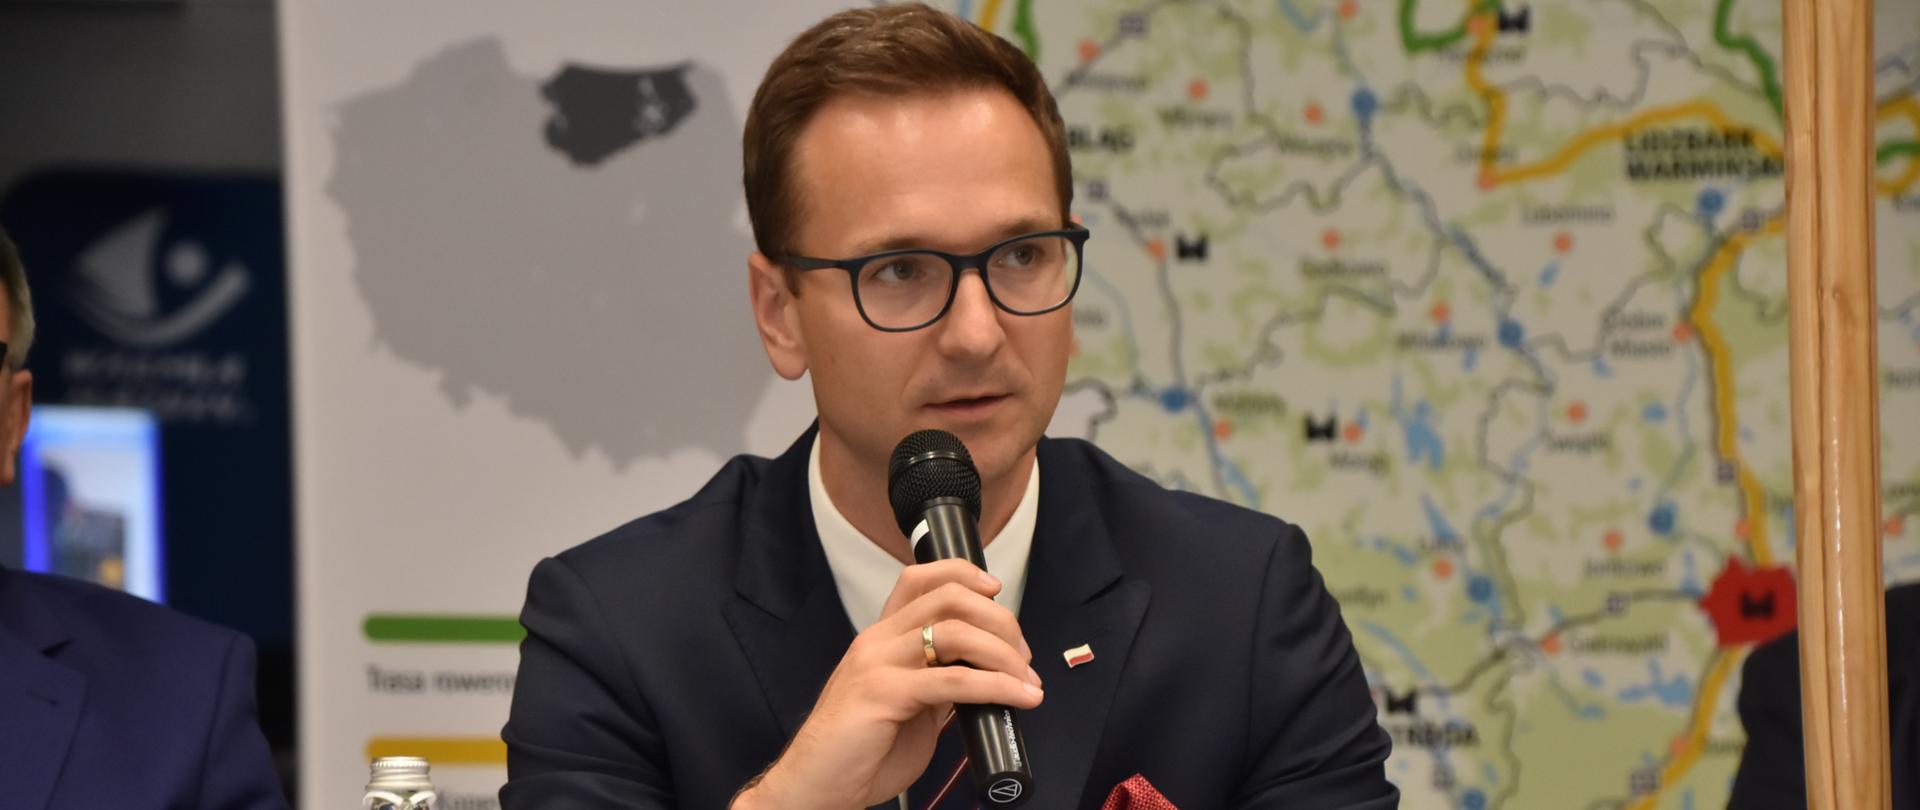 Wiceminister Waldemar Buda z mikrofonem siedzi przy stole, za nim mapa województwa warmińsko-mazurskiego.